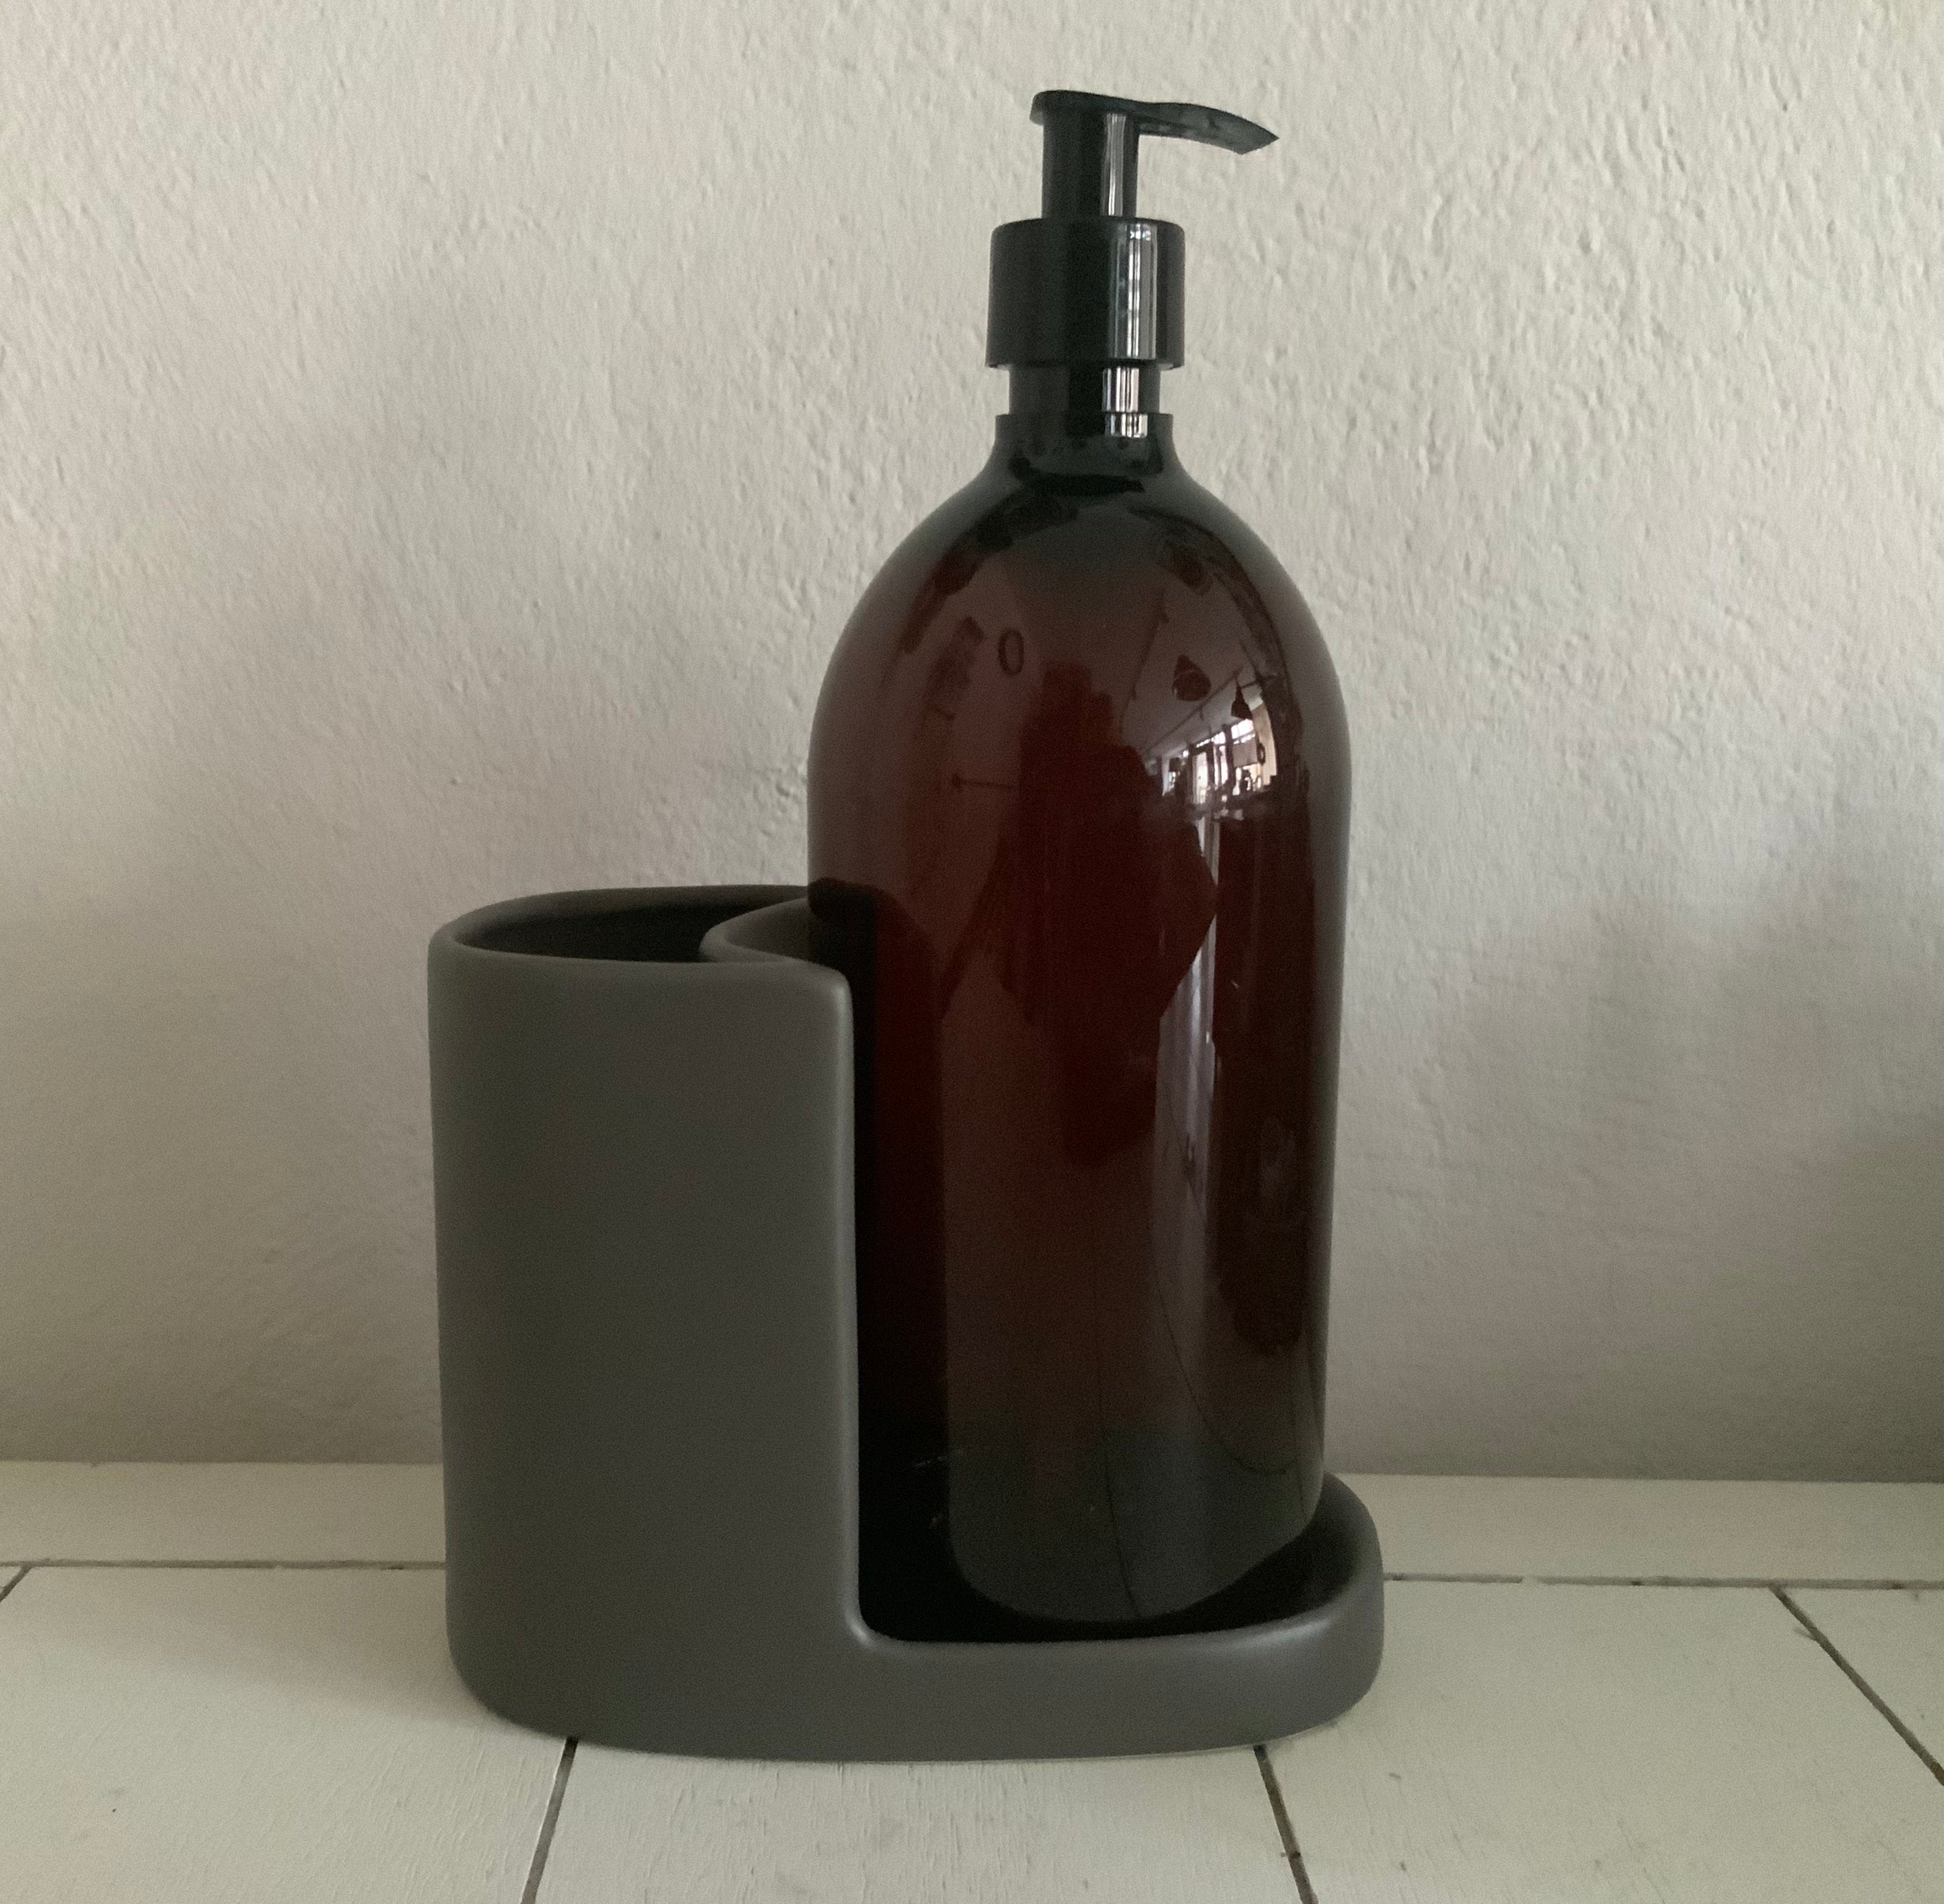 Plint Spülmittelhalter Keramik Grau und Flasche für Spülmittel 1 Liter braun